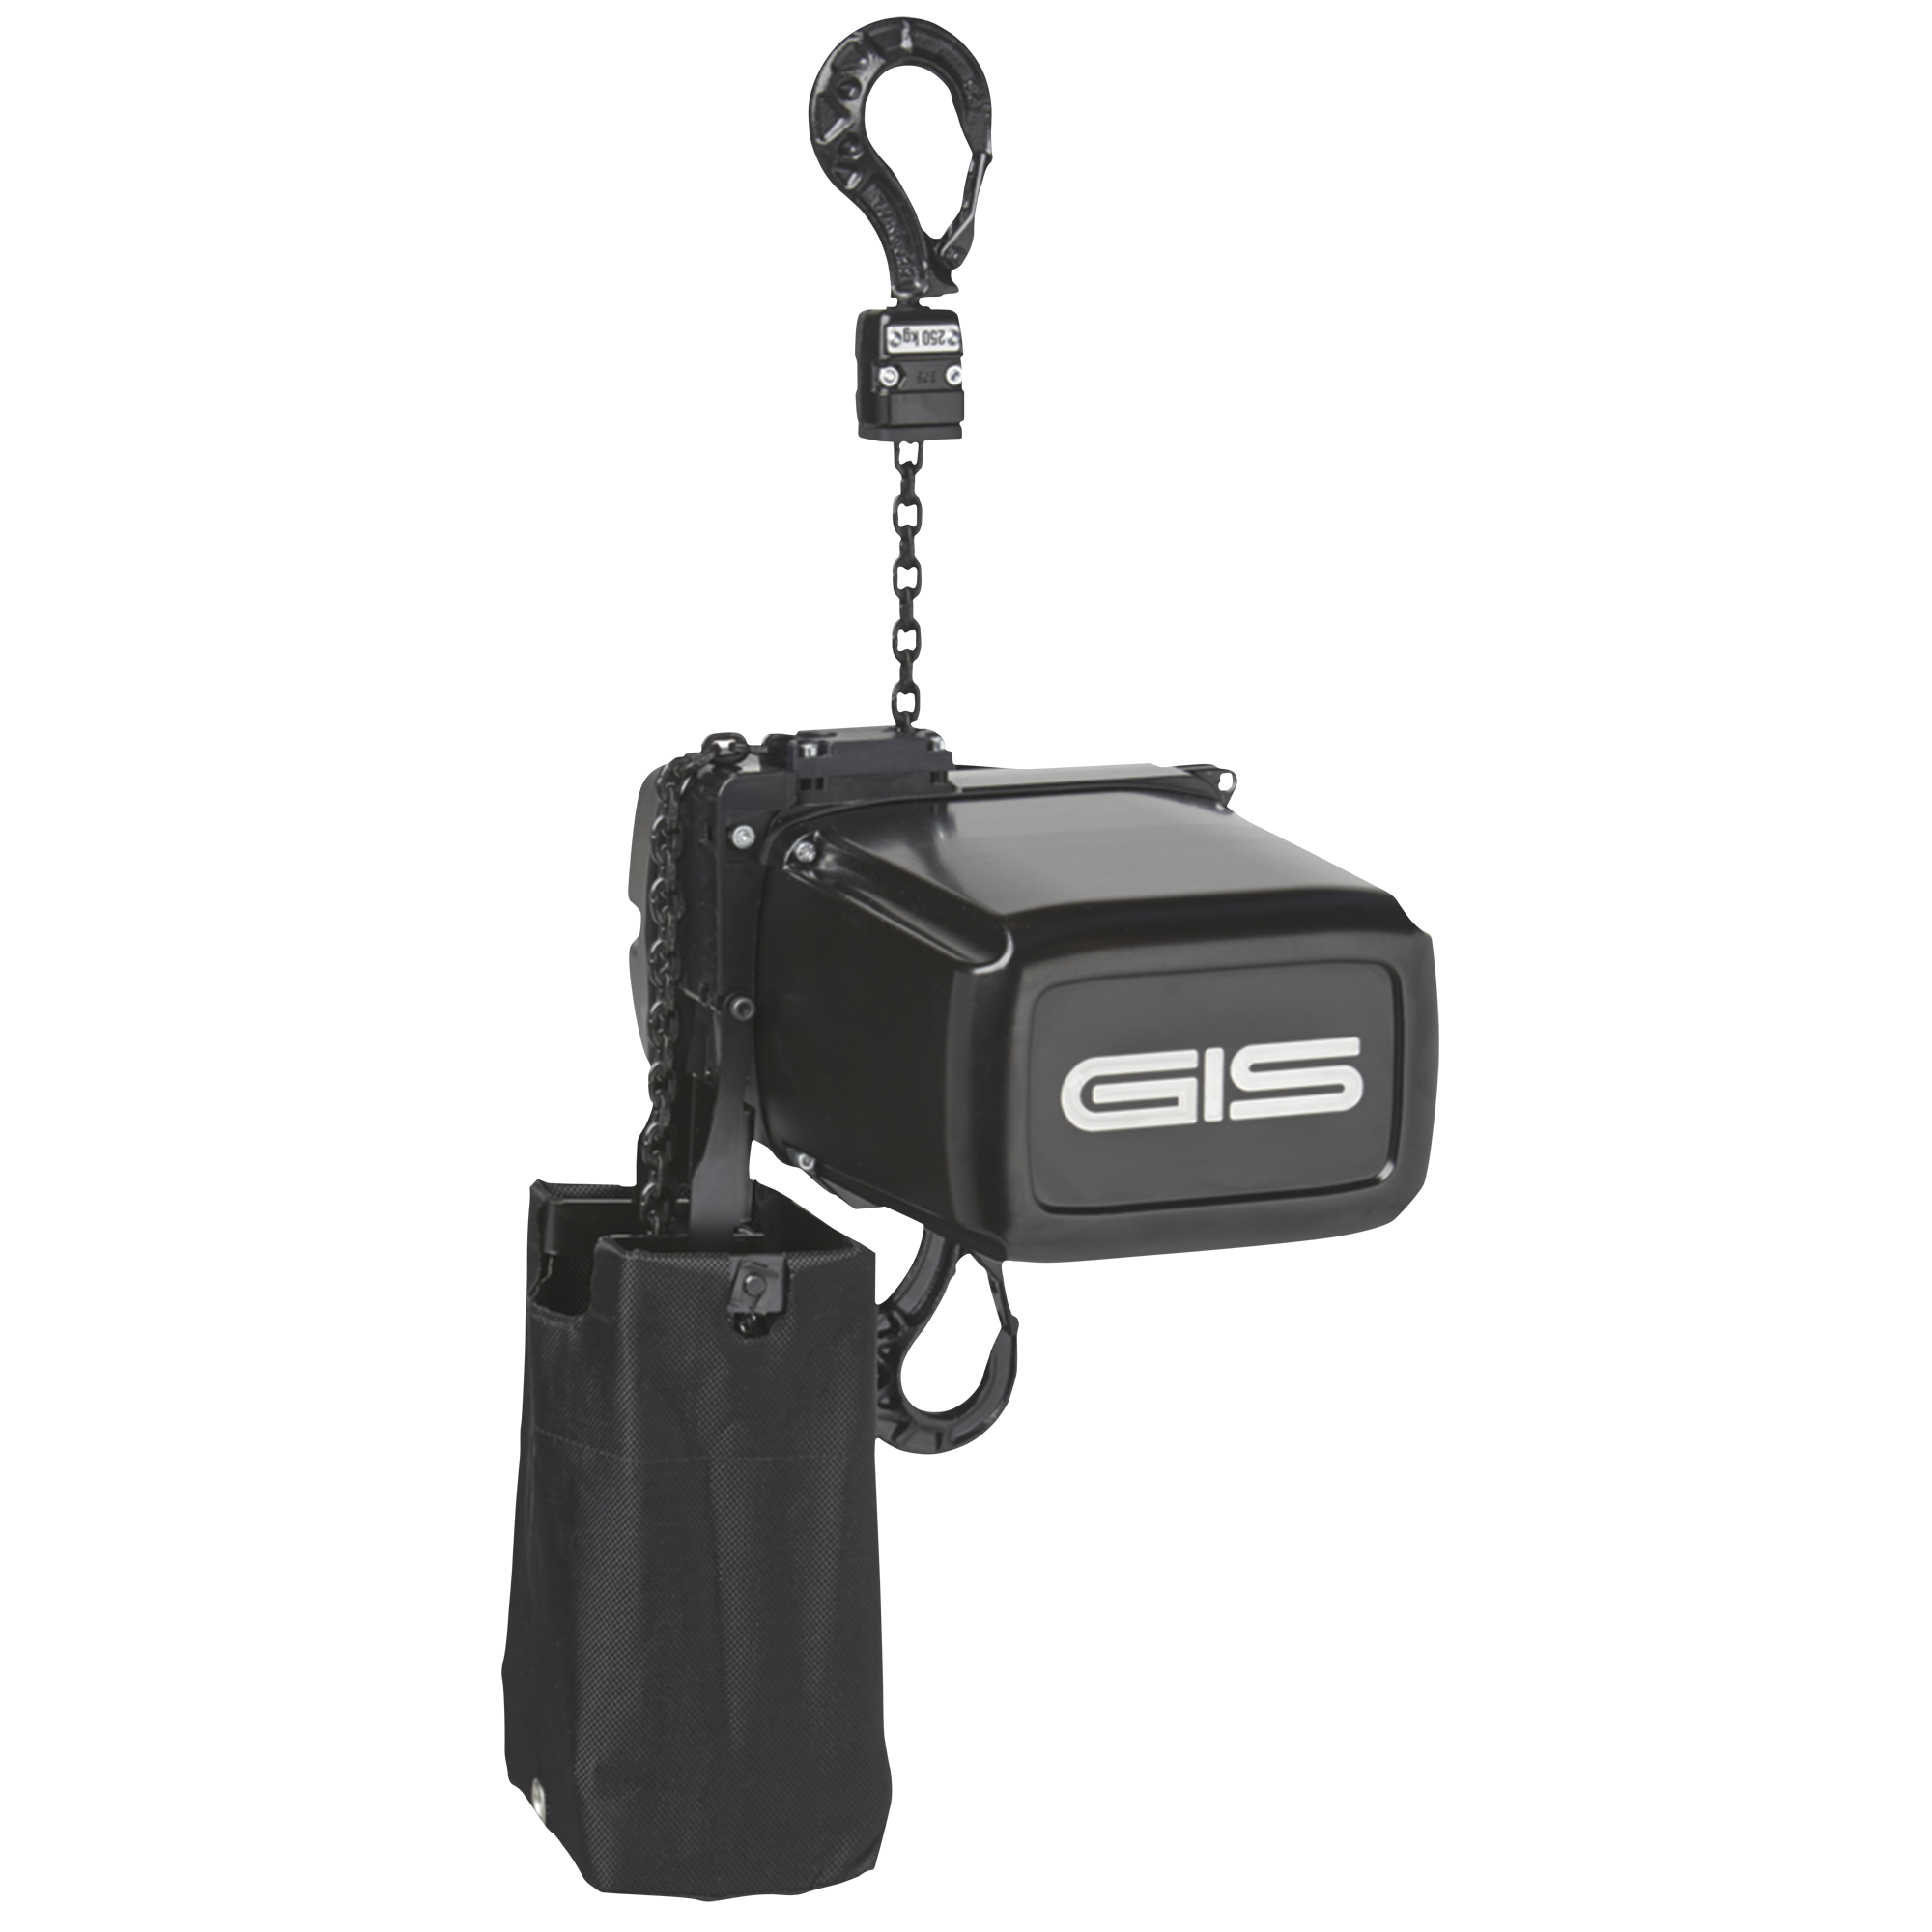 GIS GIS Electric Chainhoist 250 kg 20 m, D8+